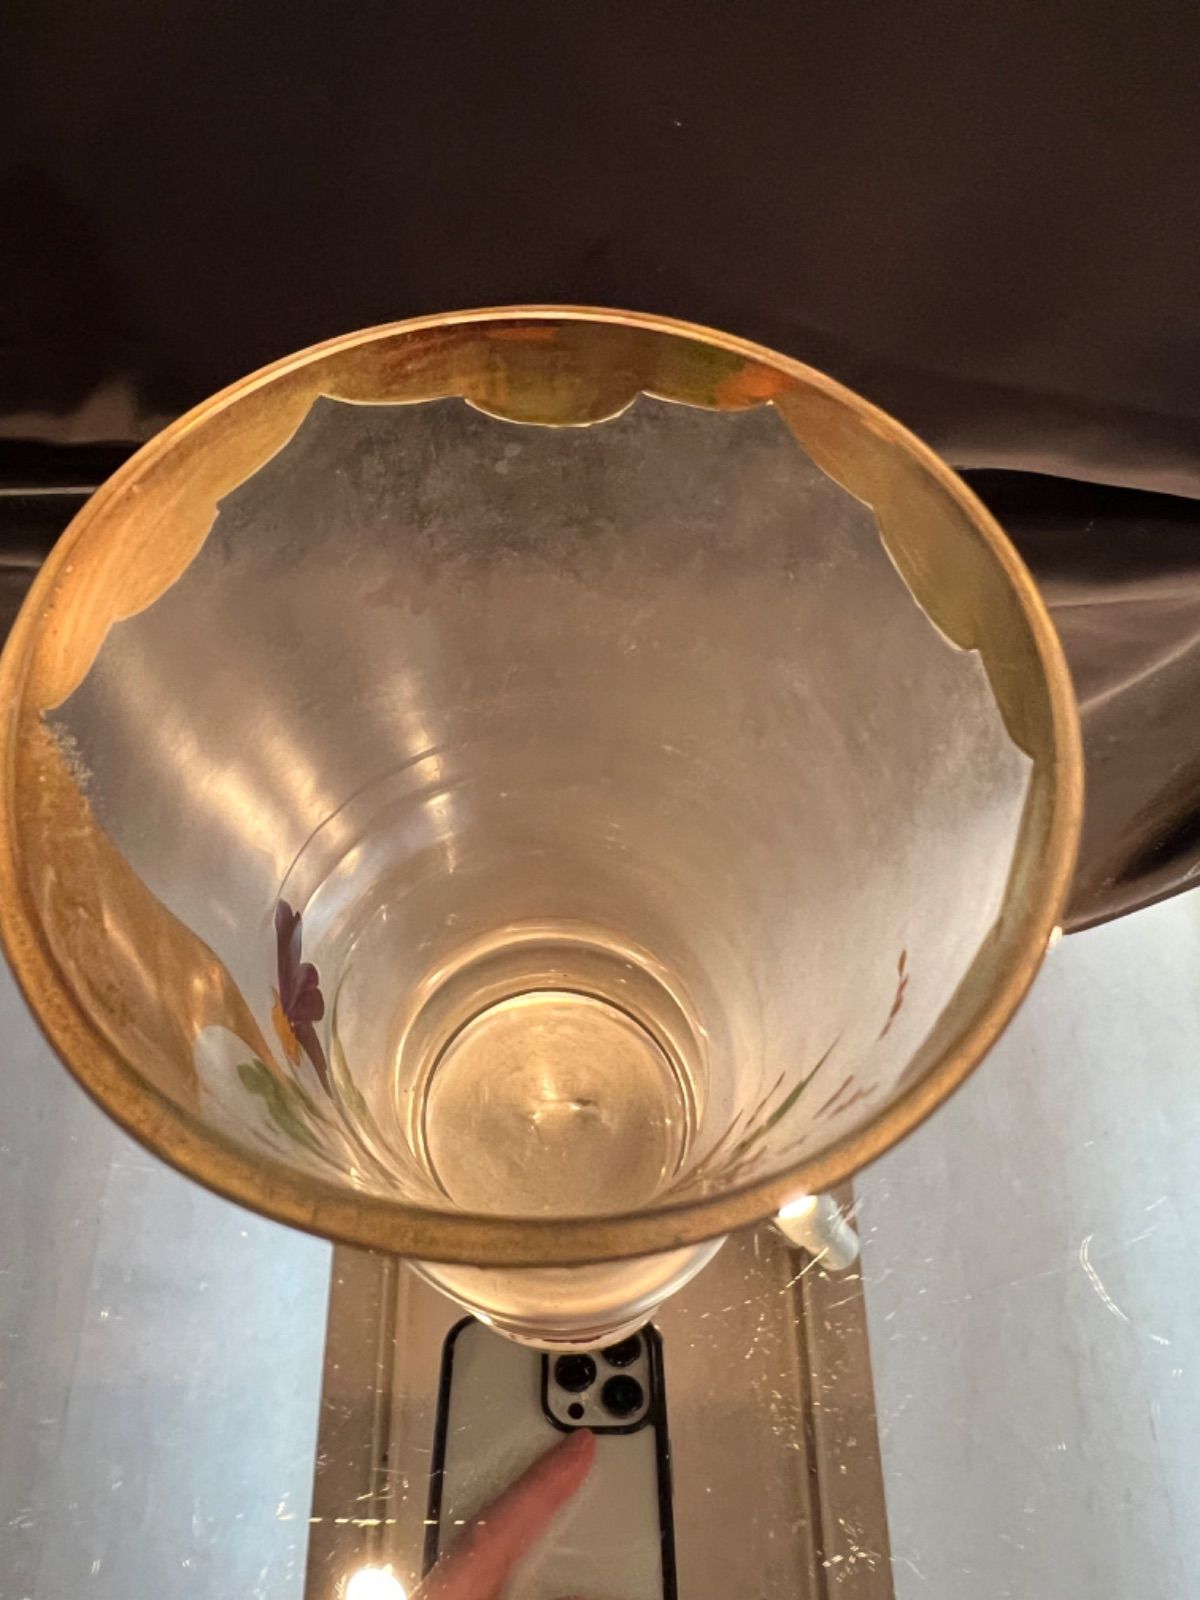 ボヘミア ハンドペイントタンブラー(大) 20世紀初頭 カメイガラス